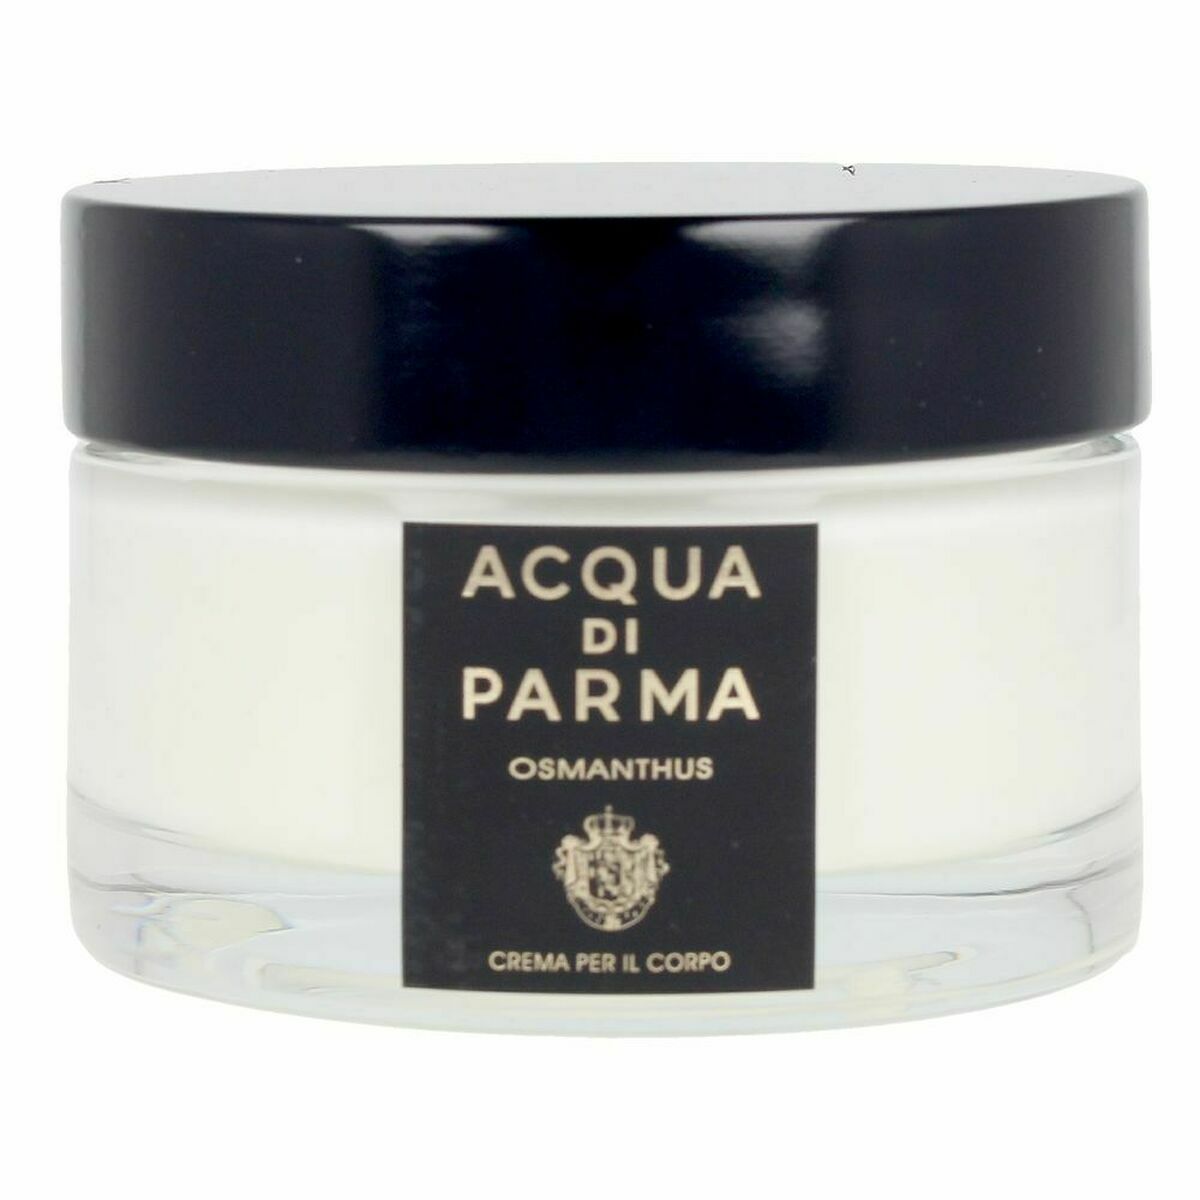 Scented Body Cream Acqua Di Parma Osmanthus 150 ml